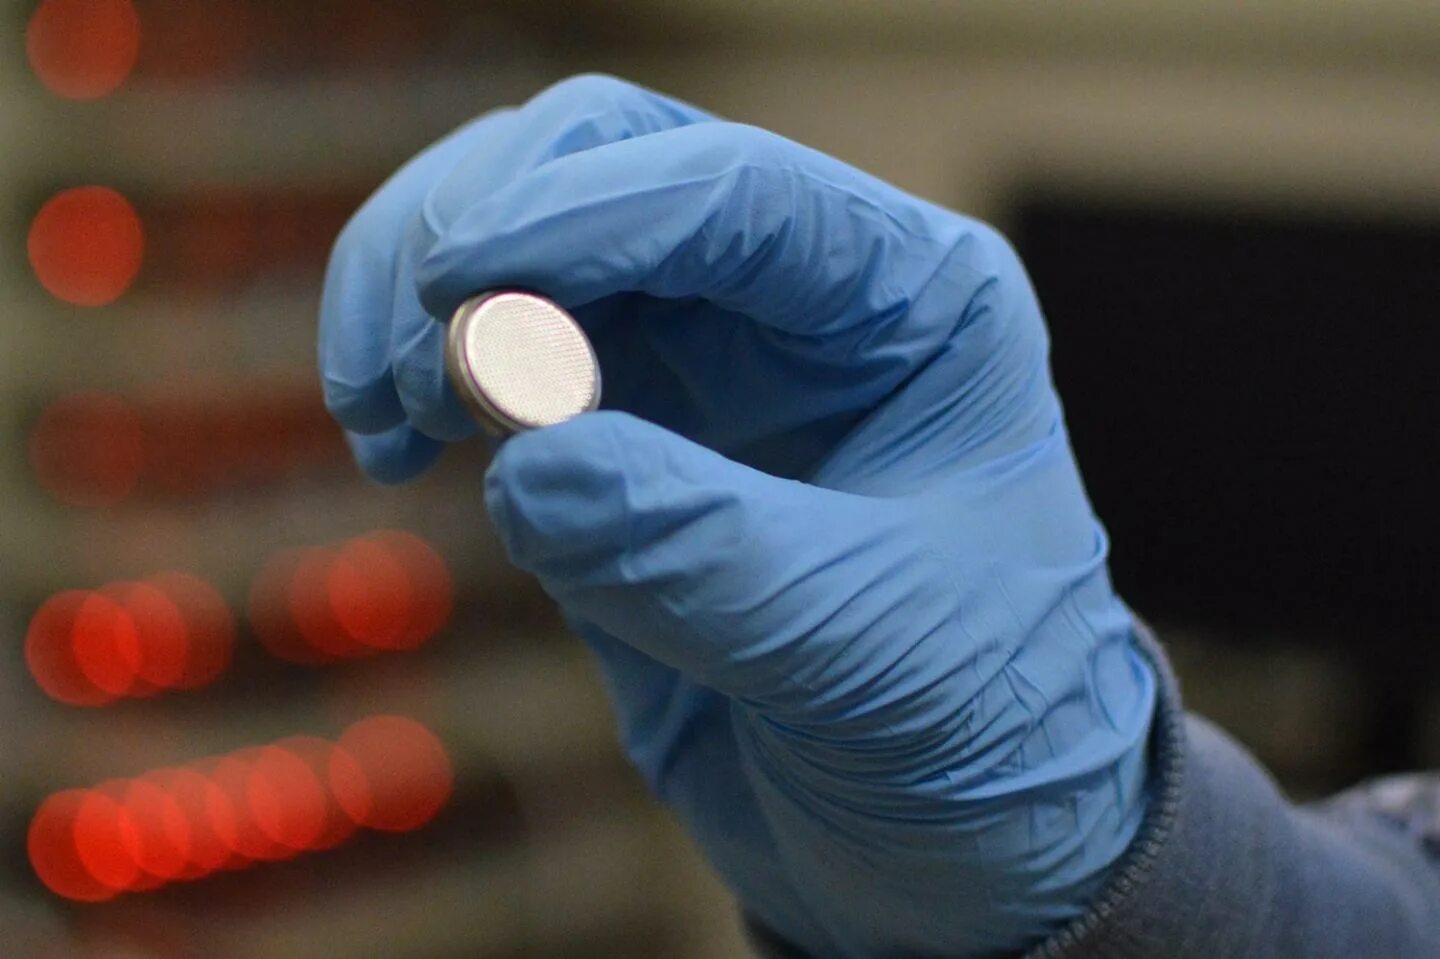 Нанотехнология держит в руке. Sodium Electrode. Круглая батарейка в желудке фото.